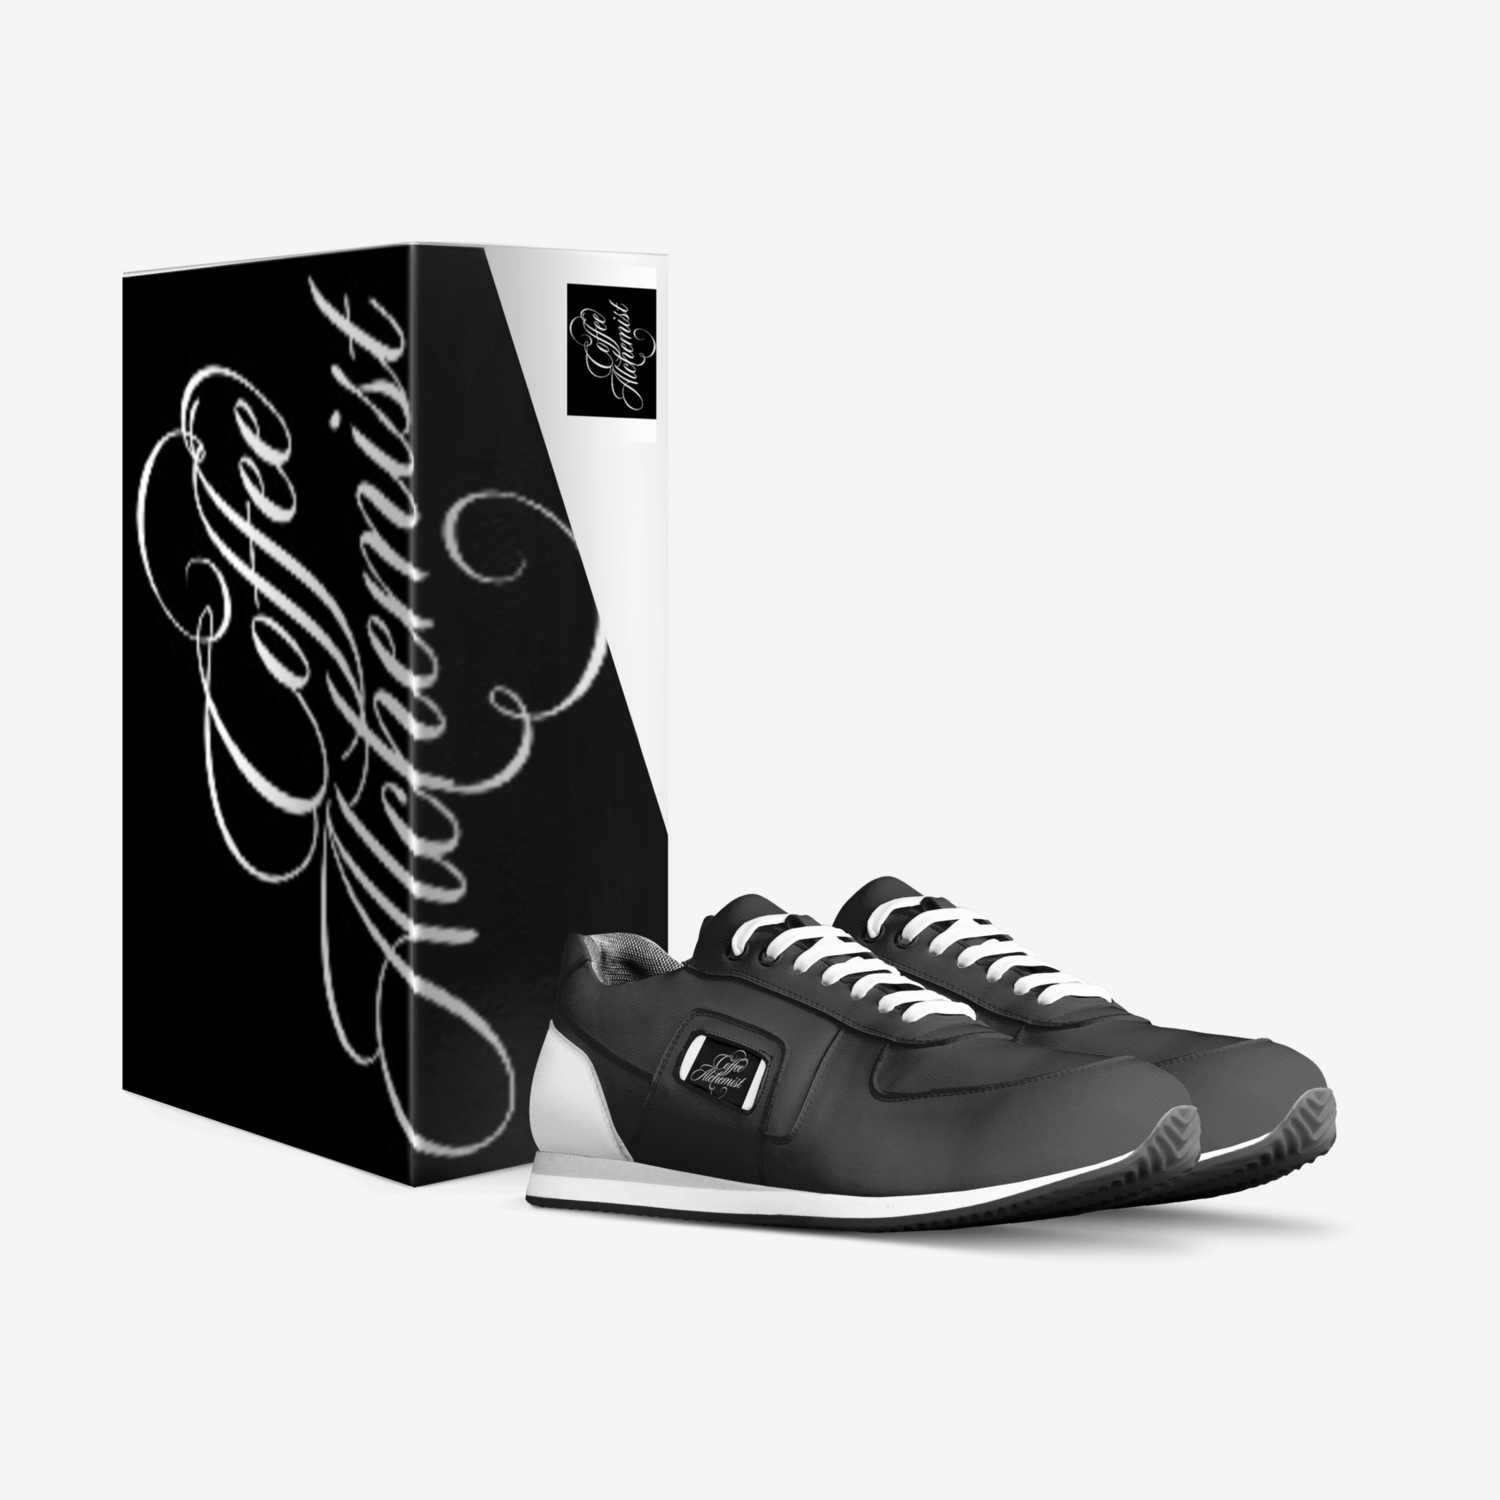 HOITY TOITY 2 custom made in Italy shoes by John Samano | Box view